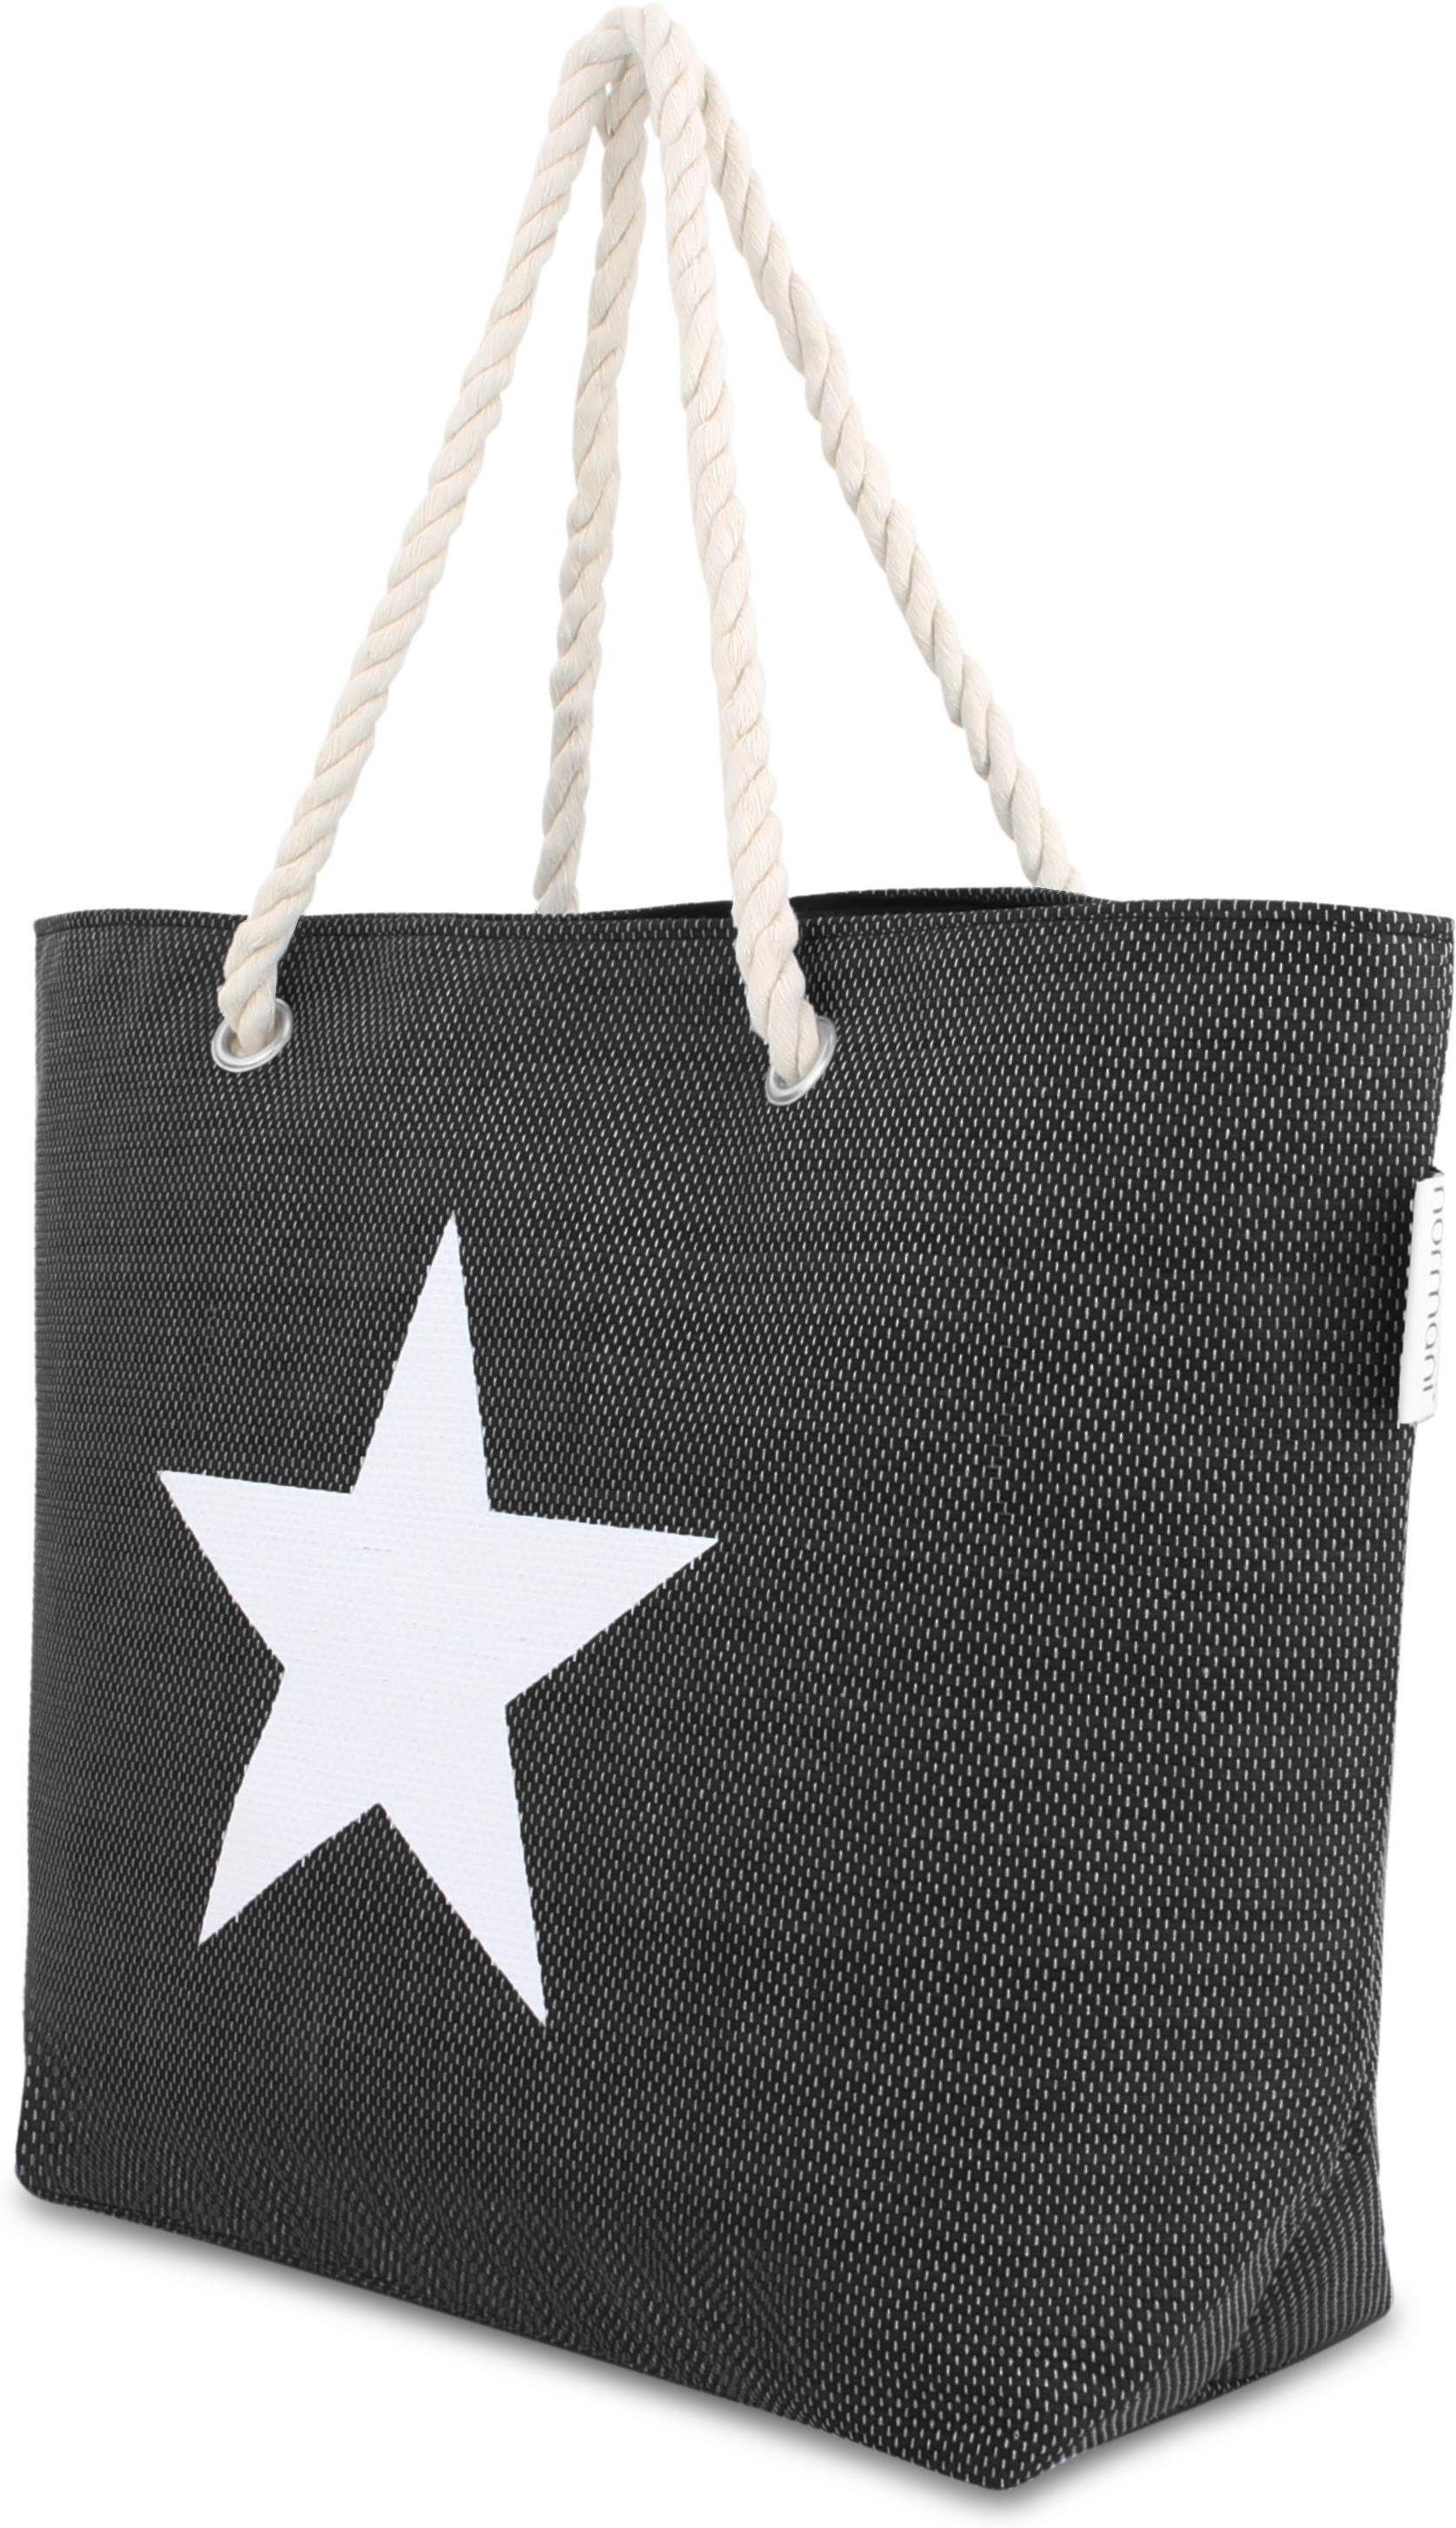 Bequeme als Black Henkeltasche Star tragbar Strandtasche Schultertasche Sommer-Umhängetasche, normani Strandtasche,